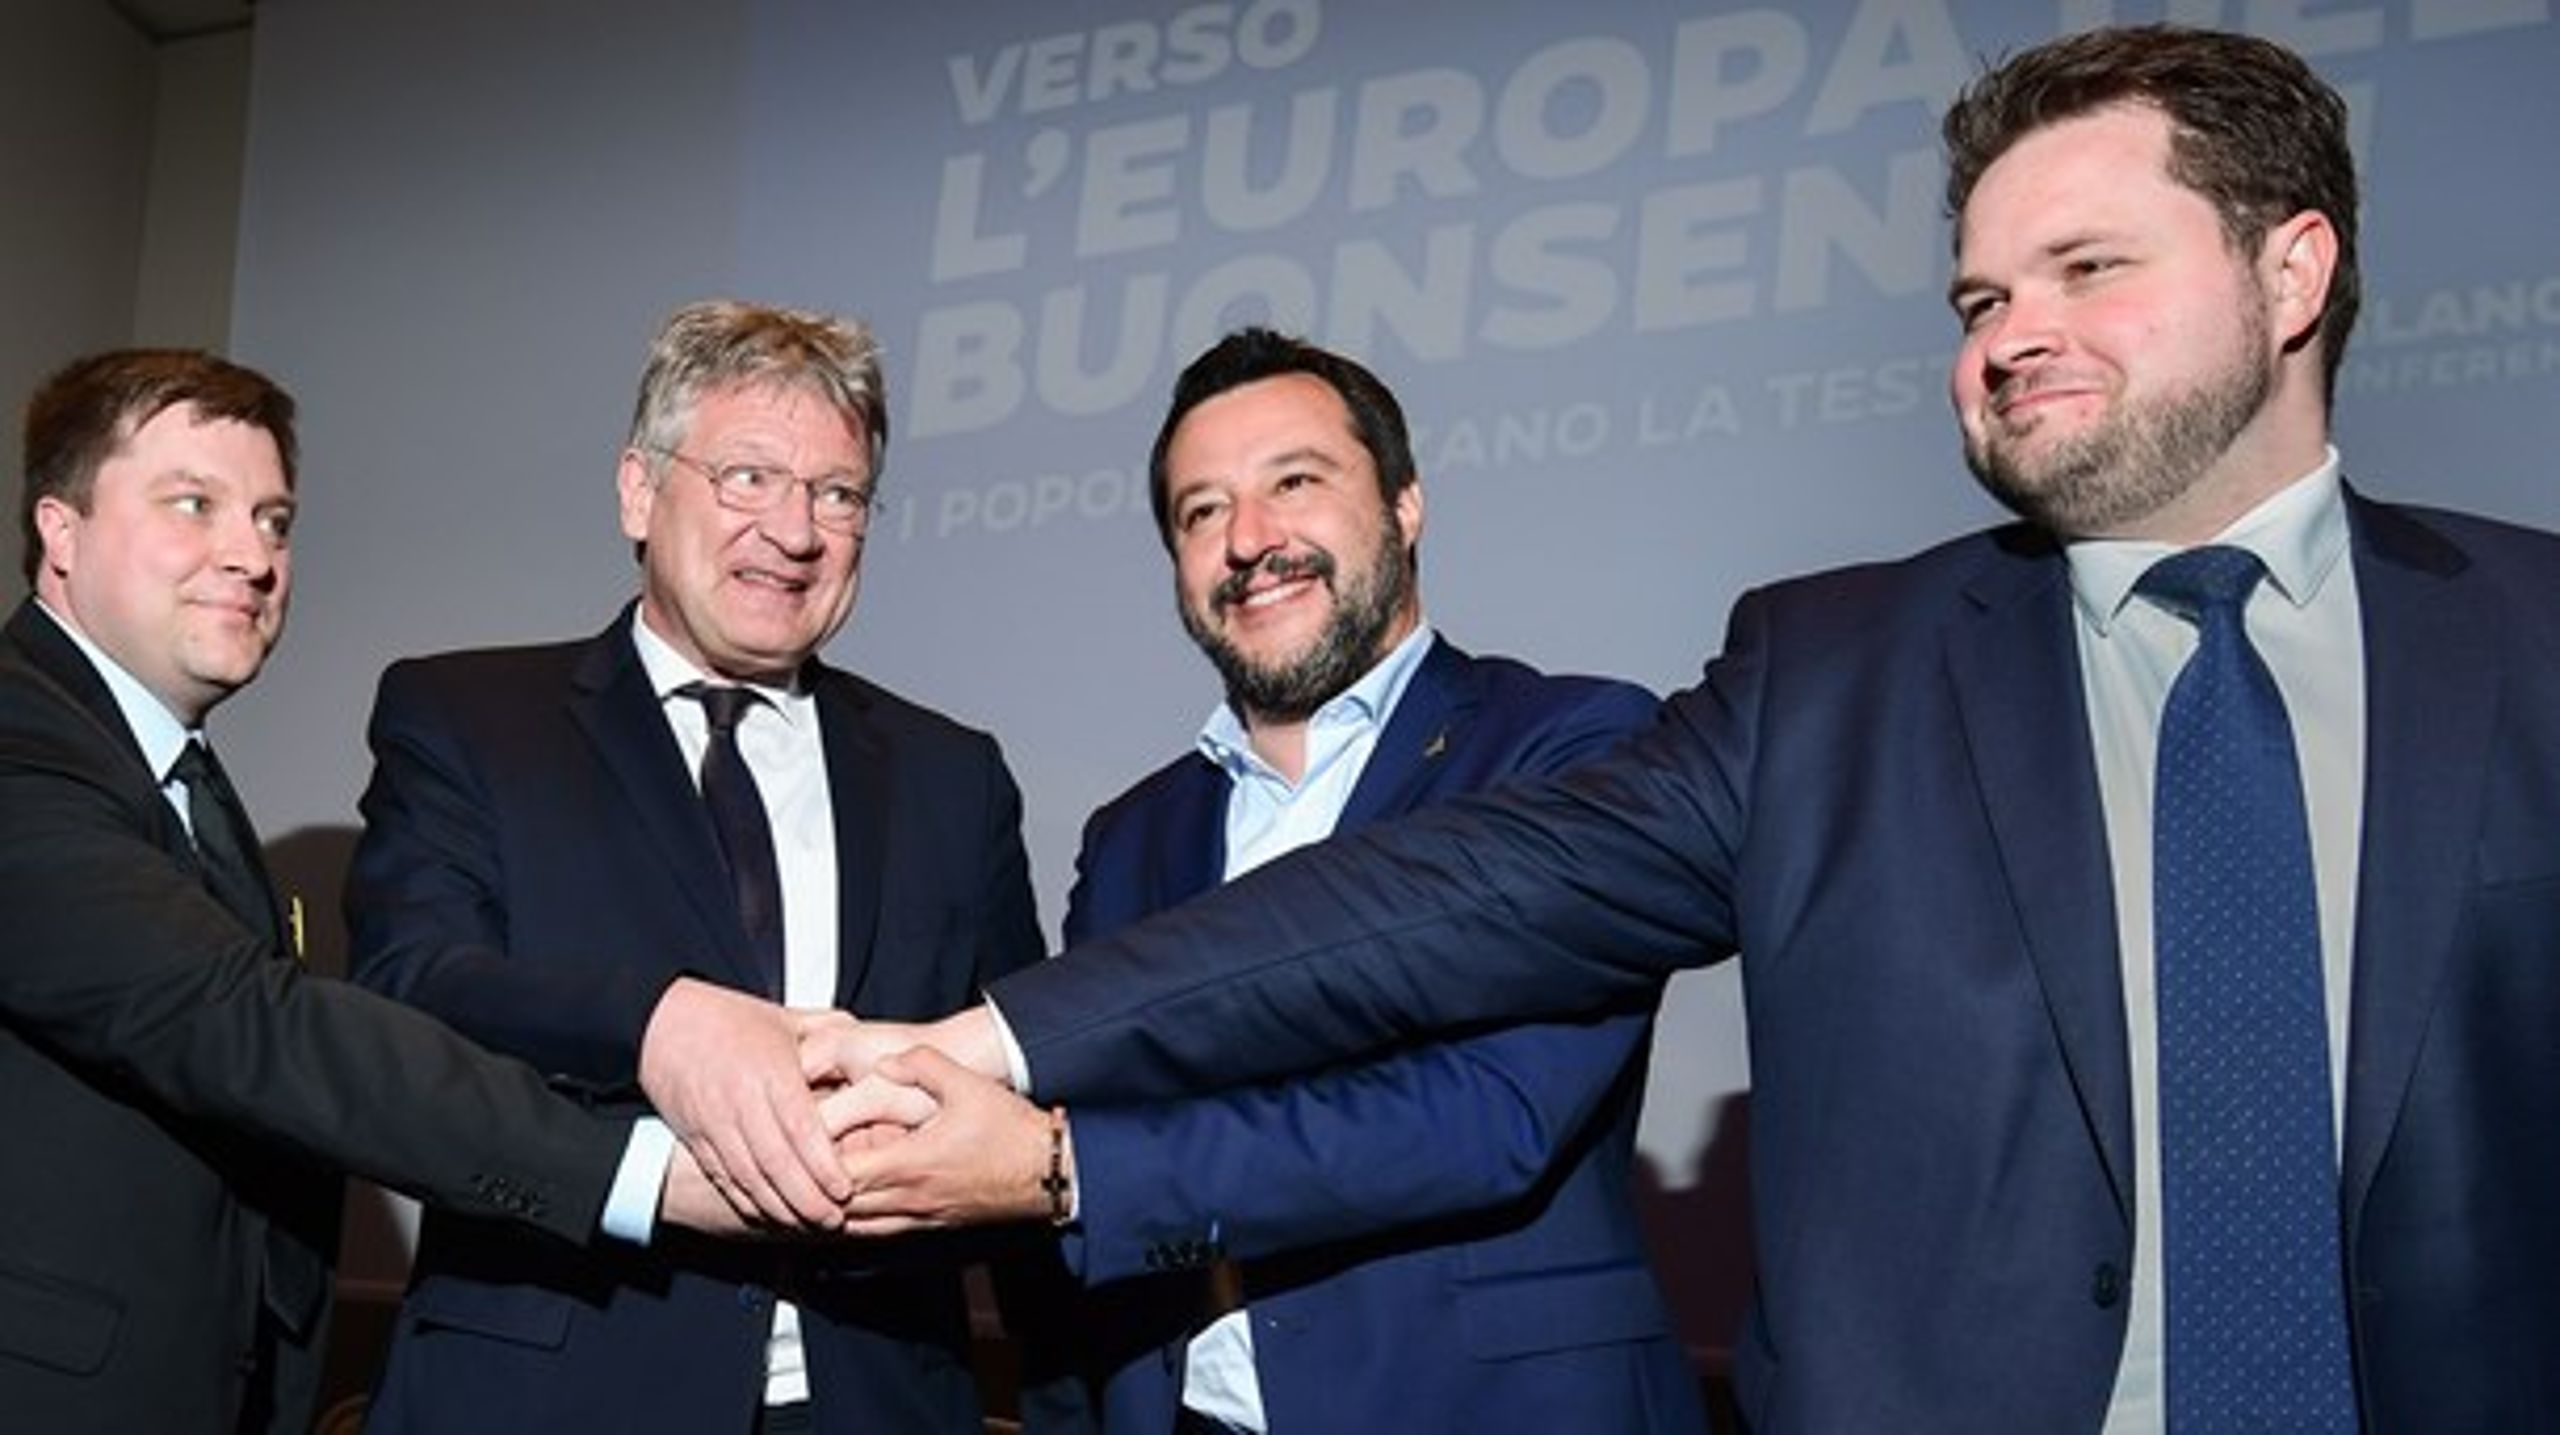 Fra venstre mod højre: Olli Kotro (De Sande Finner),&nbsp;Jörg Meuthen (Alternative für Deutschland), Matteo Salvini (Lega), Anders Vistisen (Dansk Folkeparti).&nbsp;<span><br><br></span>